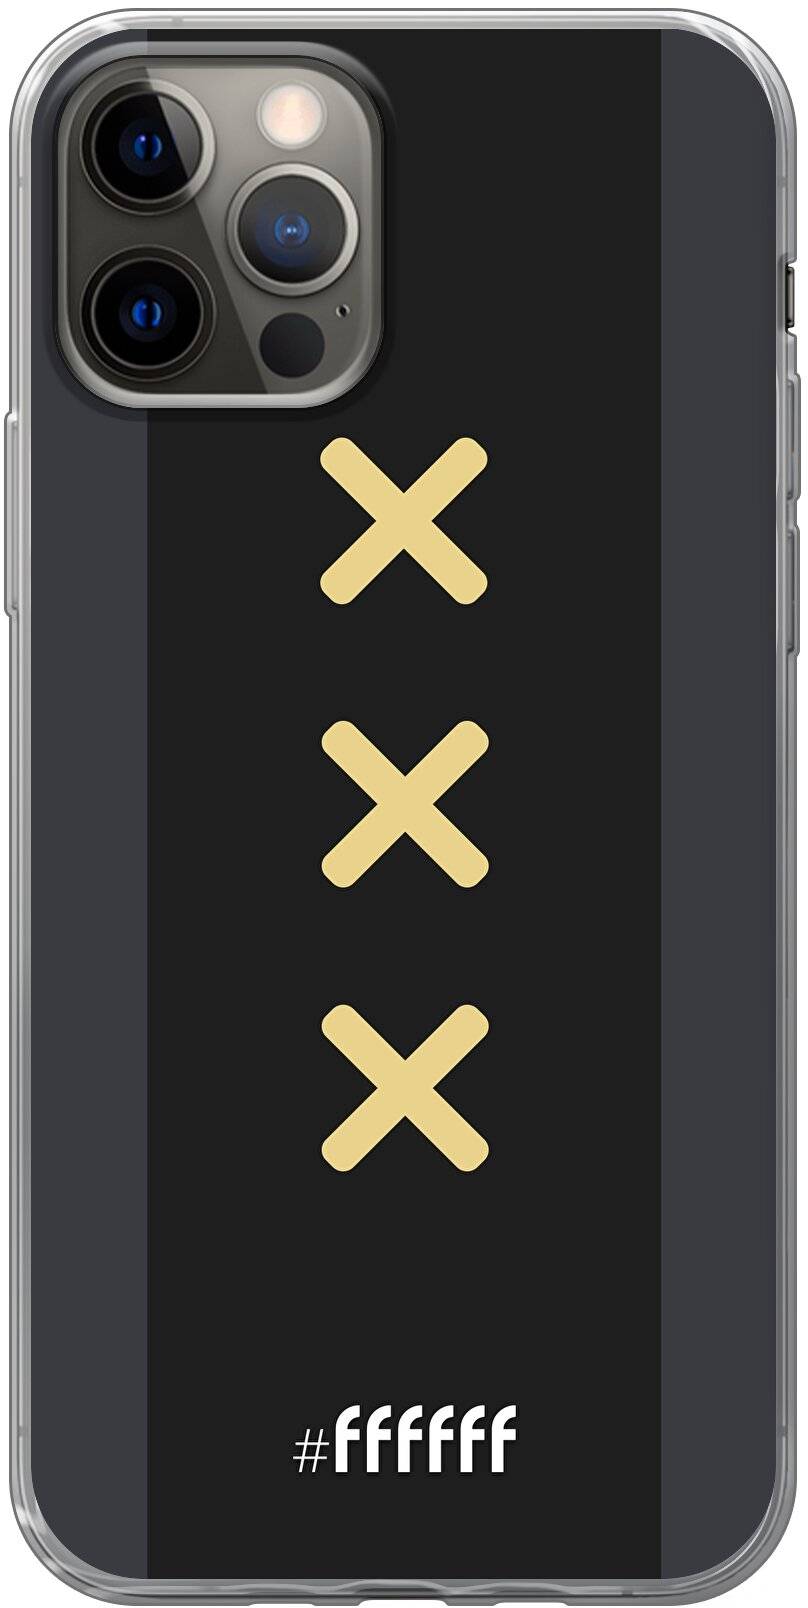 Siësta Verdraaiing Schaar Ajax Europees Uitshirt 2020-2021 (iPhone 12) #ffffff telefoonhoesje • 6F